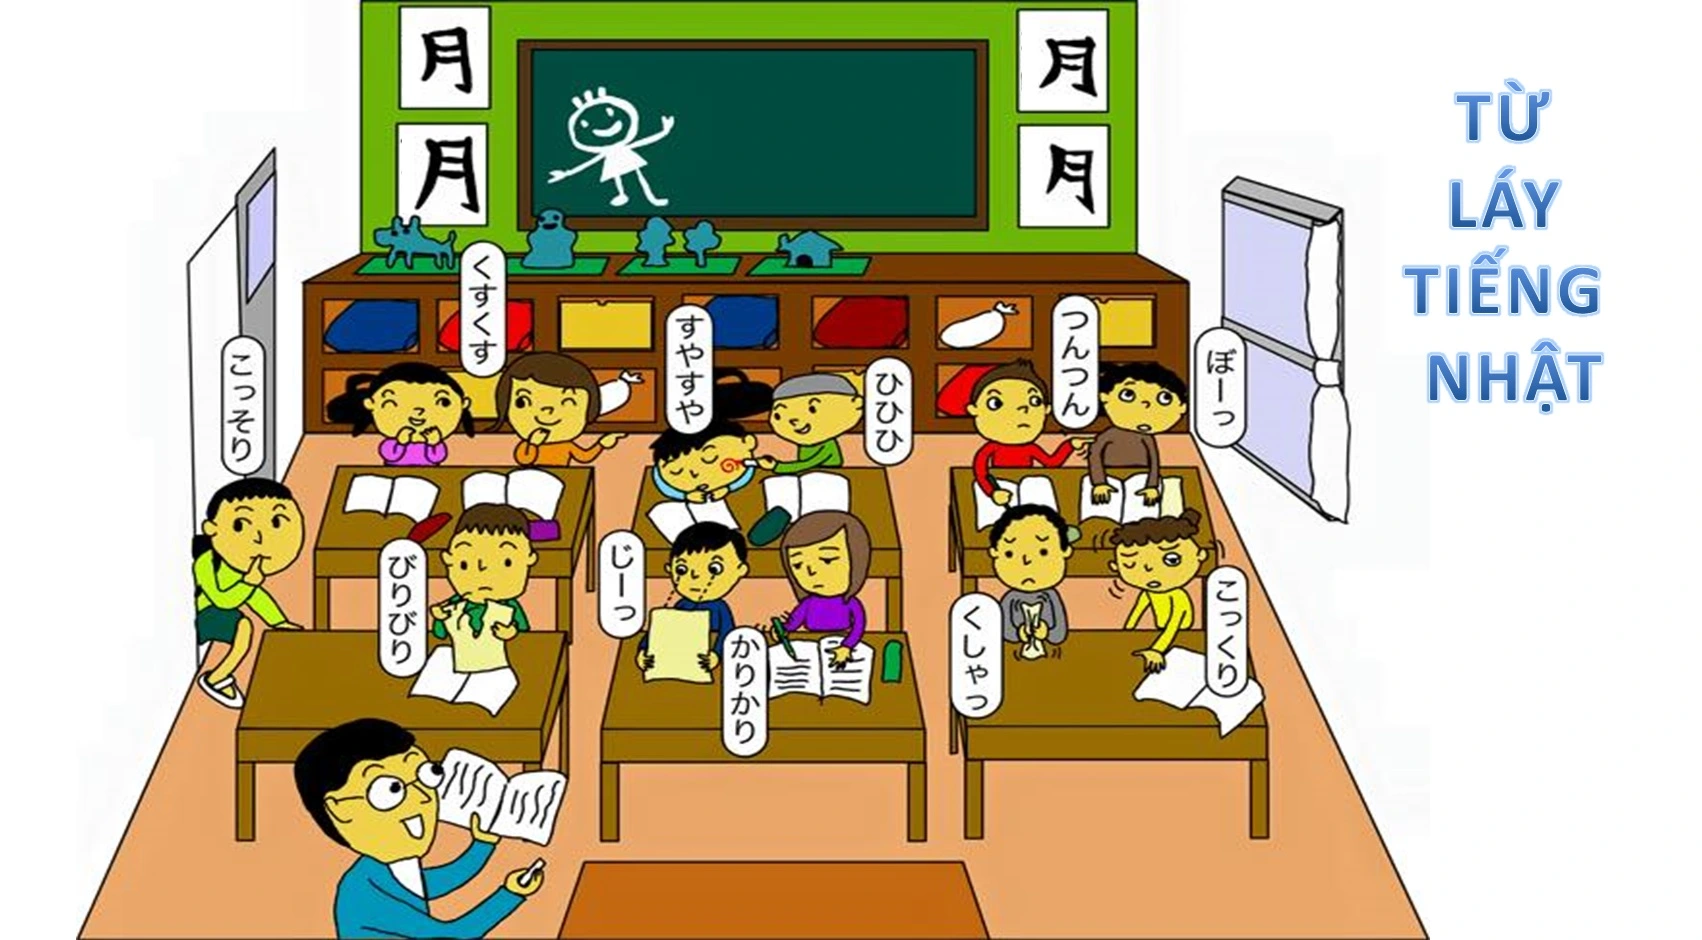 Học từ láy tiếng Nhật hiệu quả